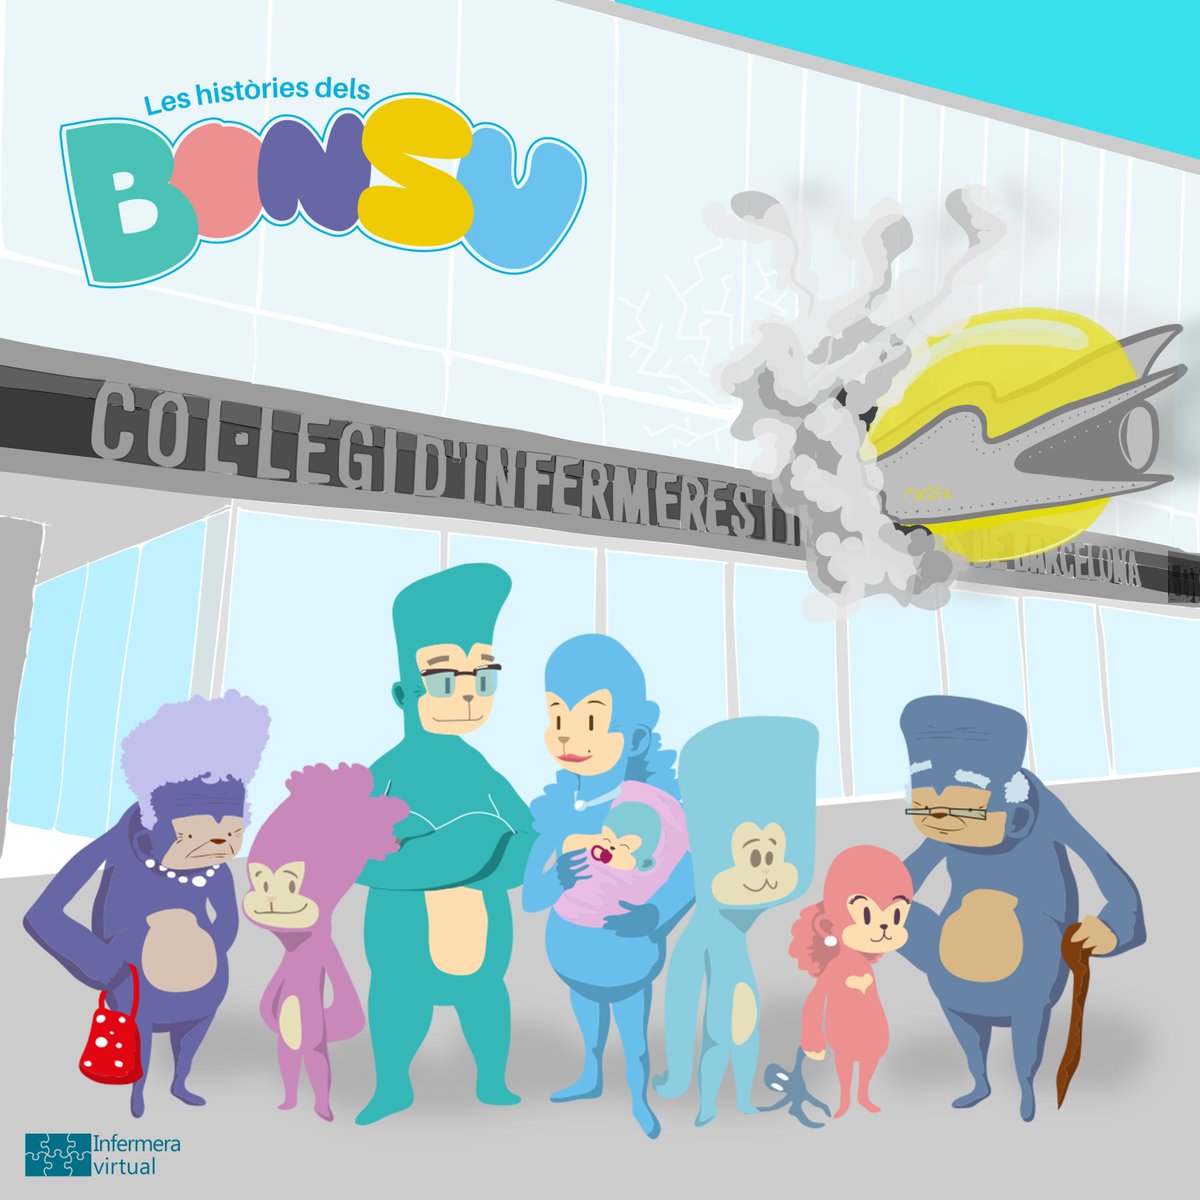 La família Bonsu, personatges creats per Infermera virtual